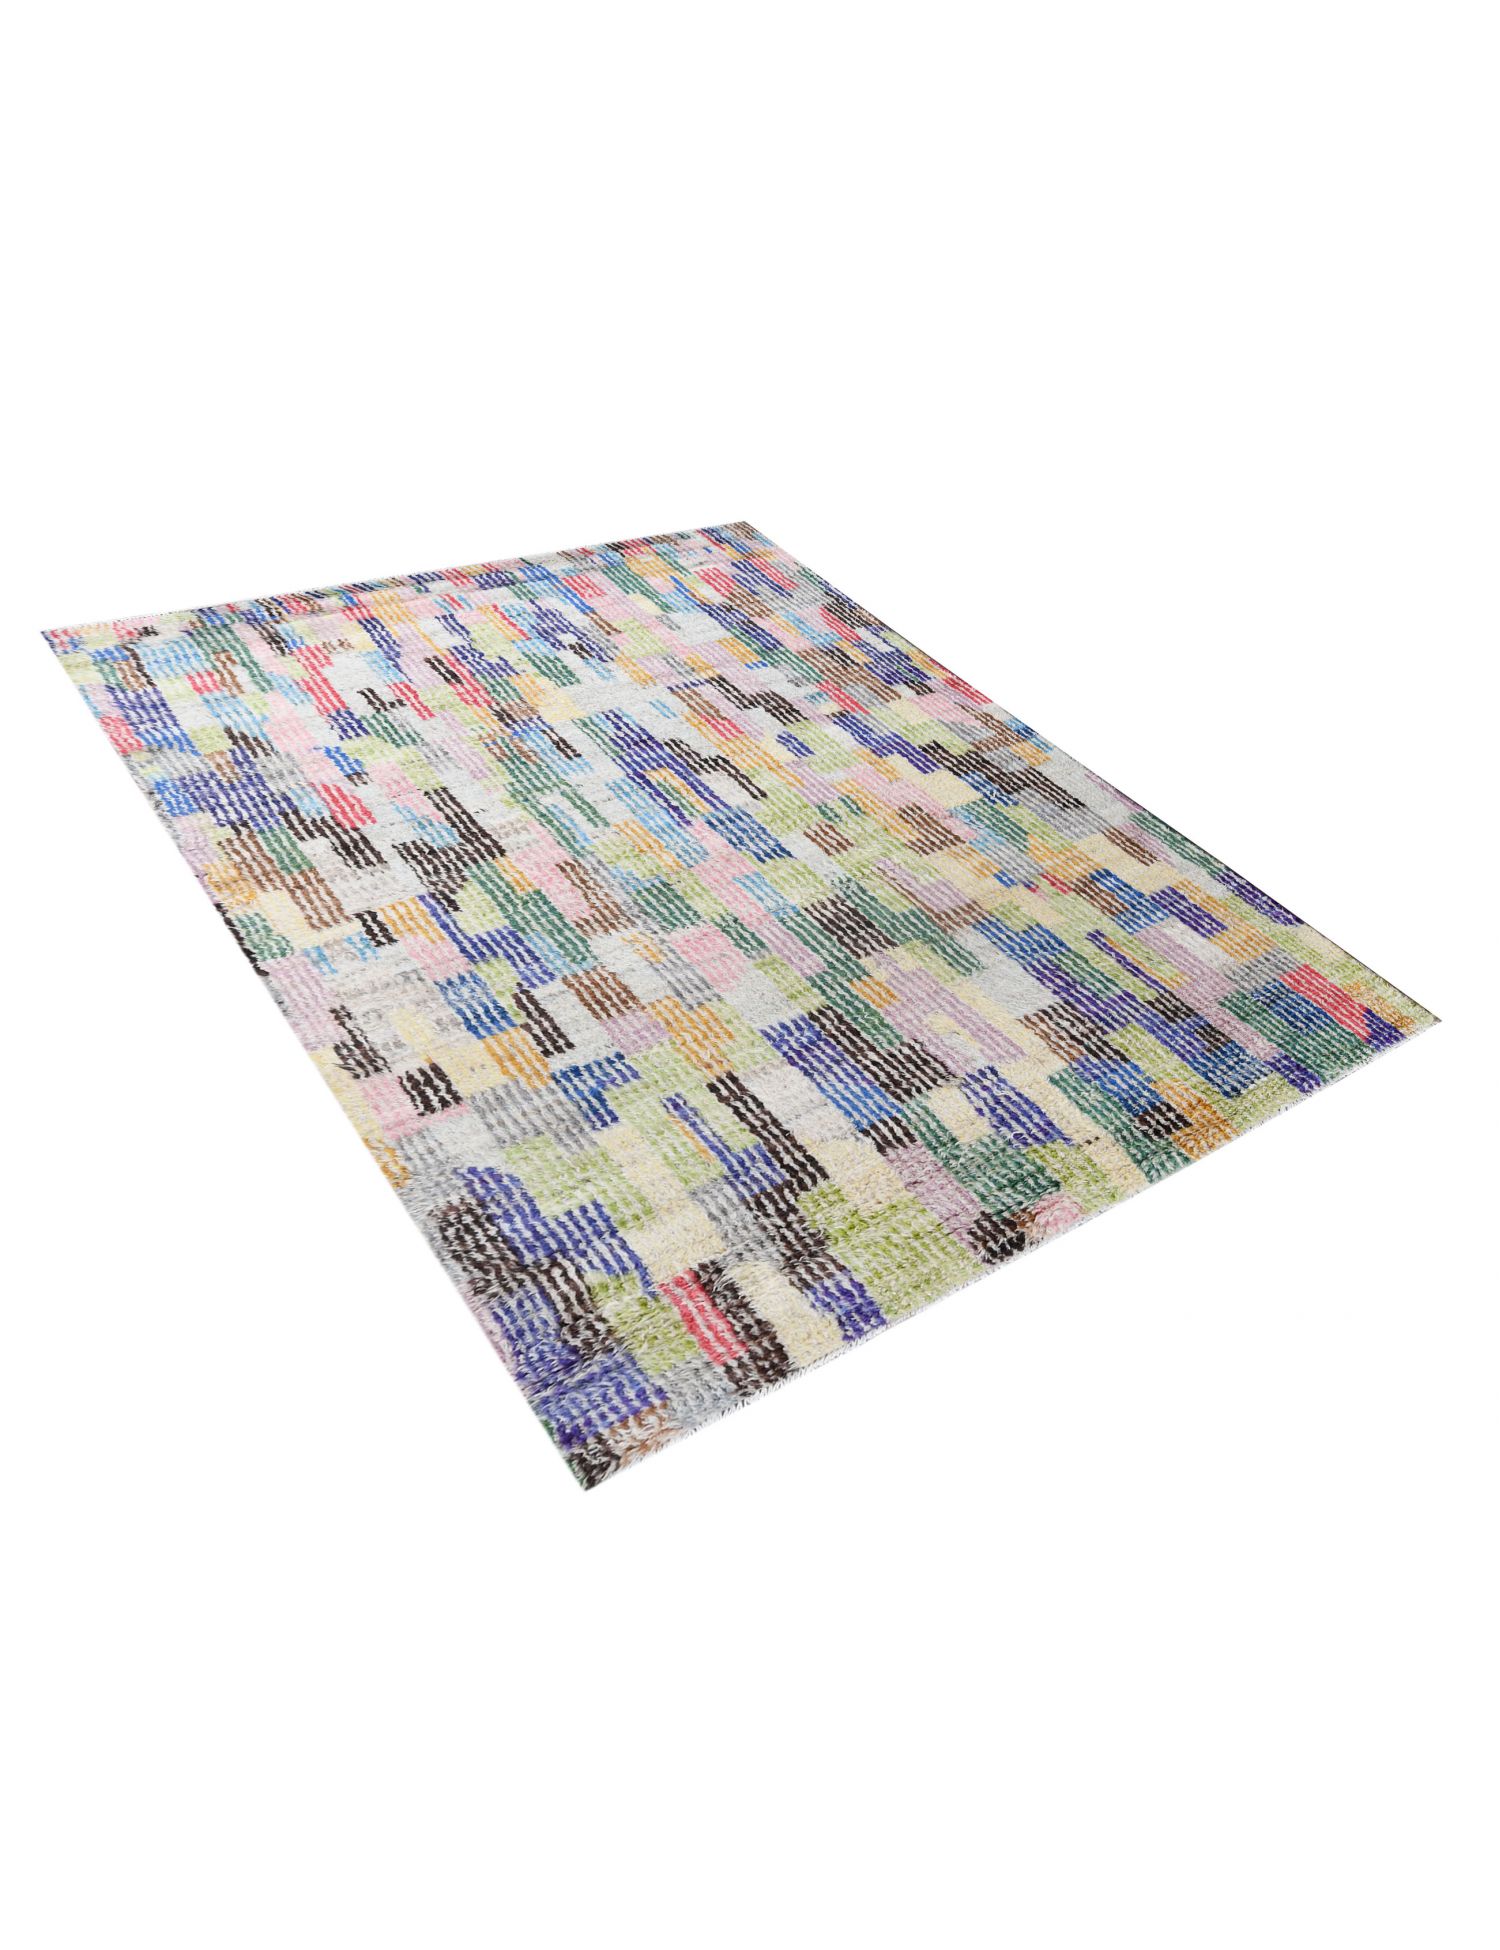 Berber Teppich  mehrfarbig <br/>305 x 200 cm